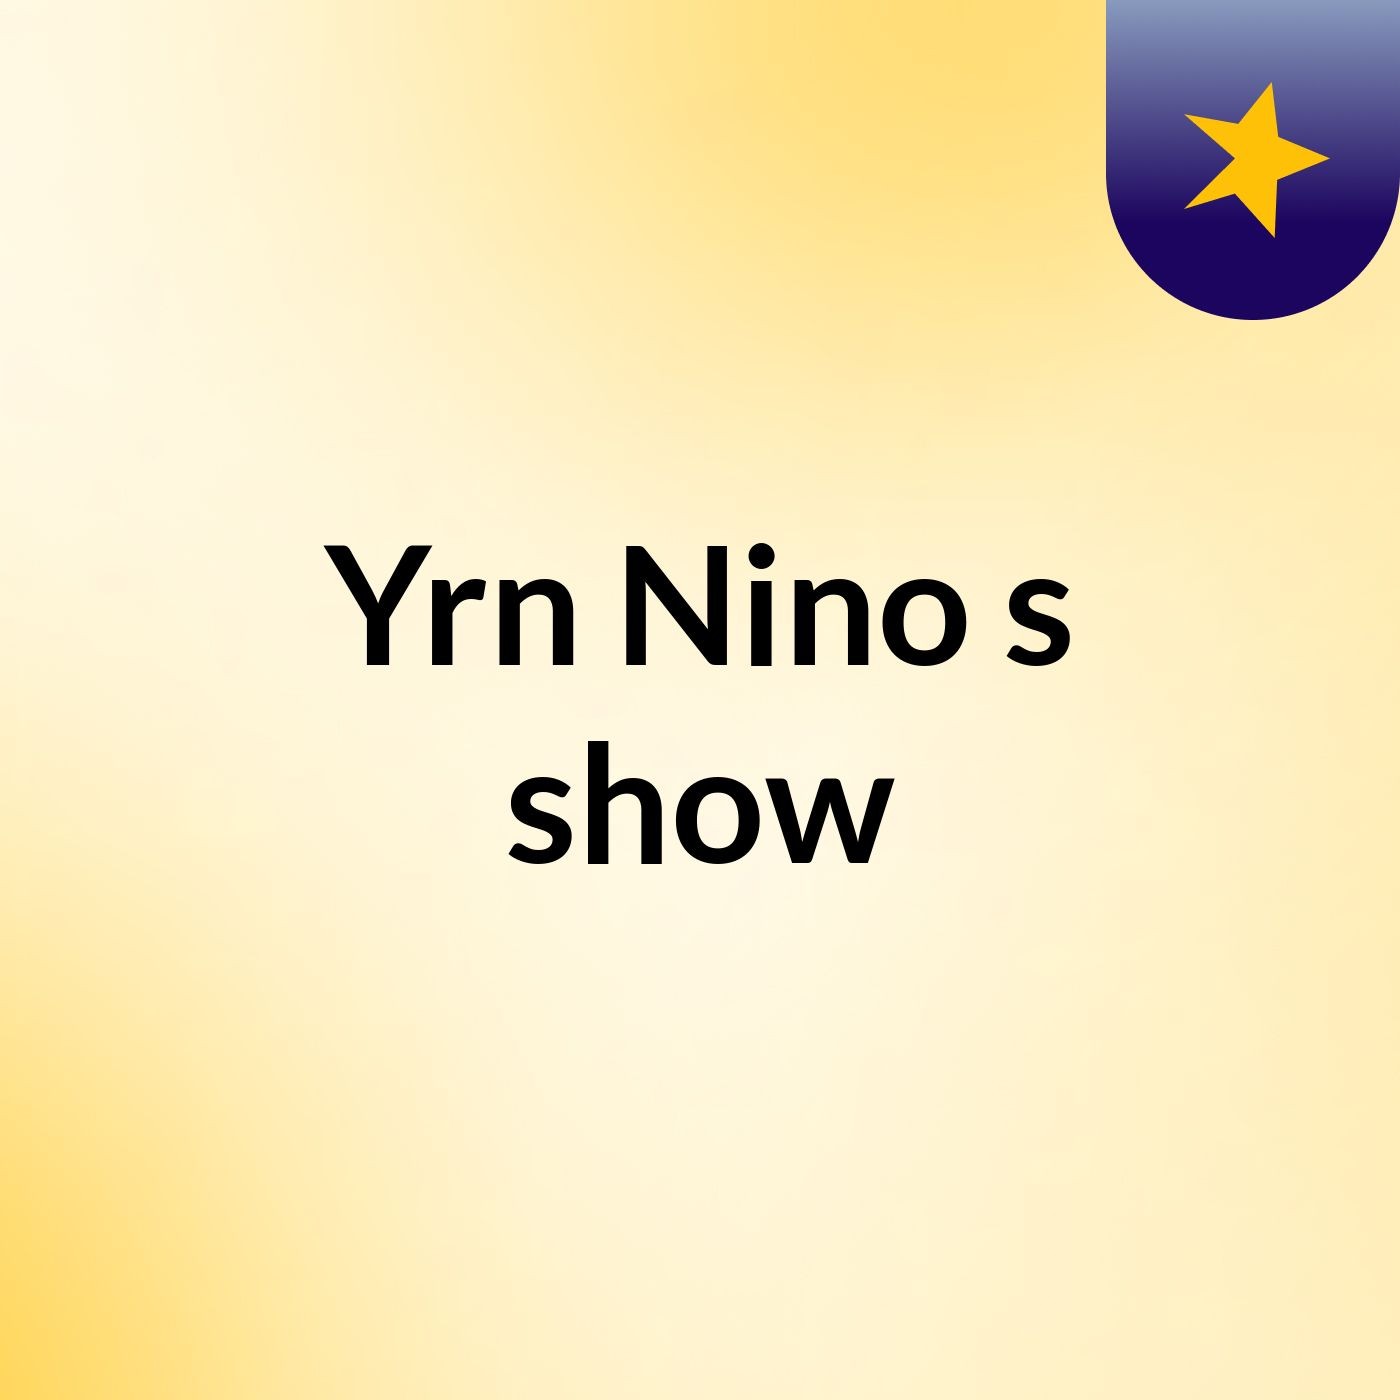 Yrn Nino's show